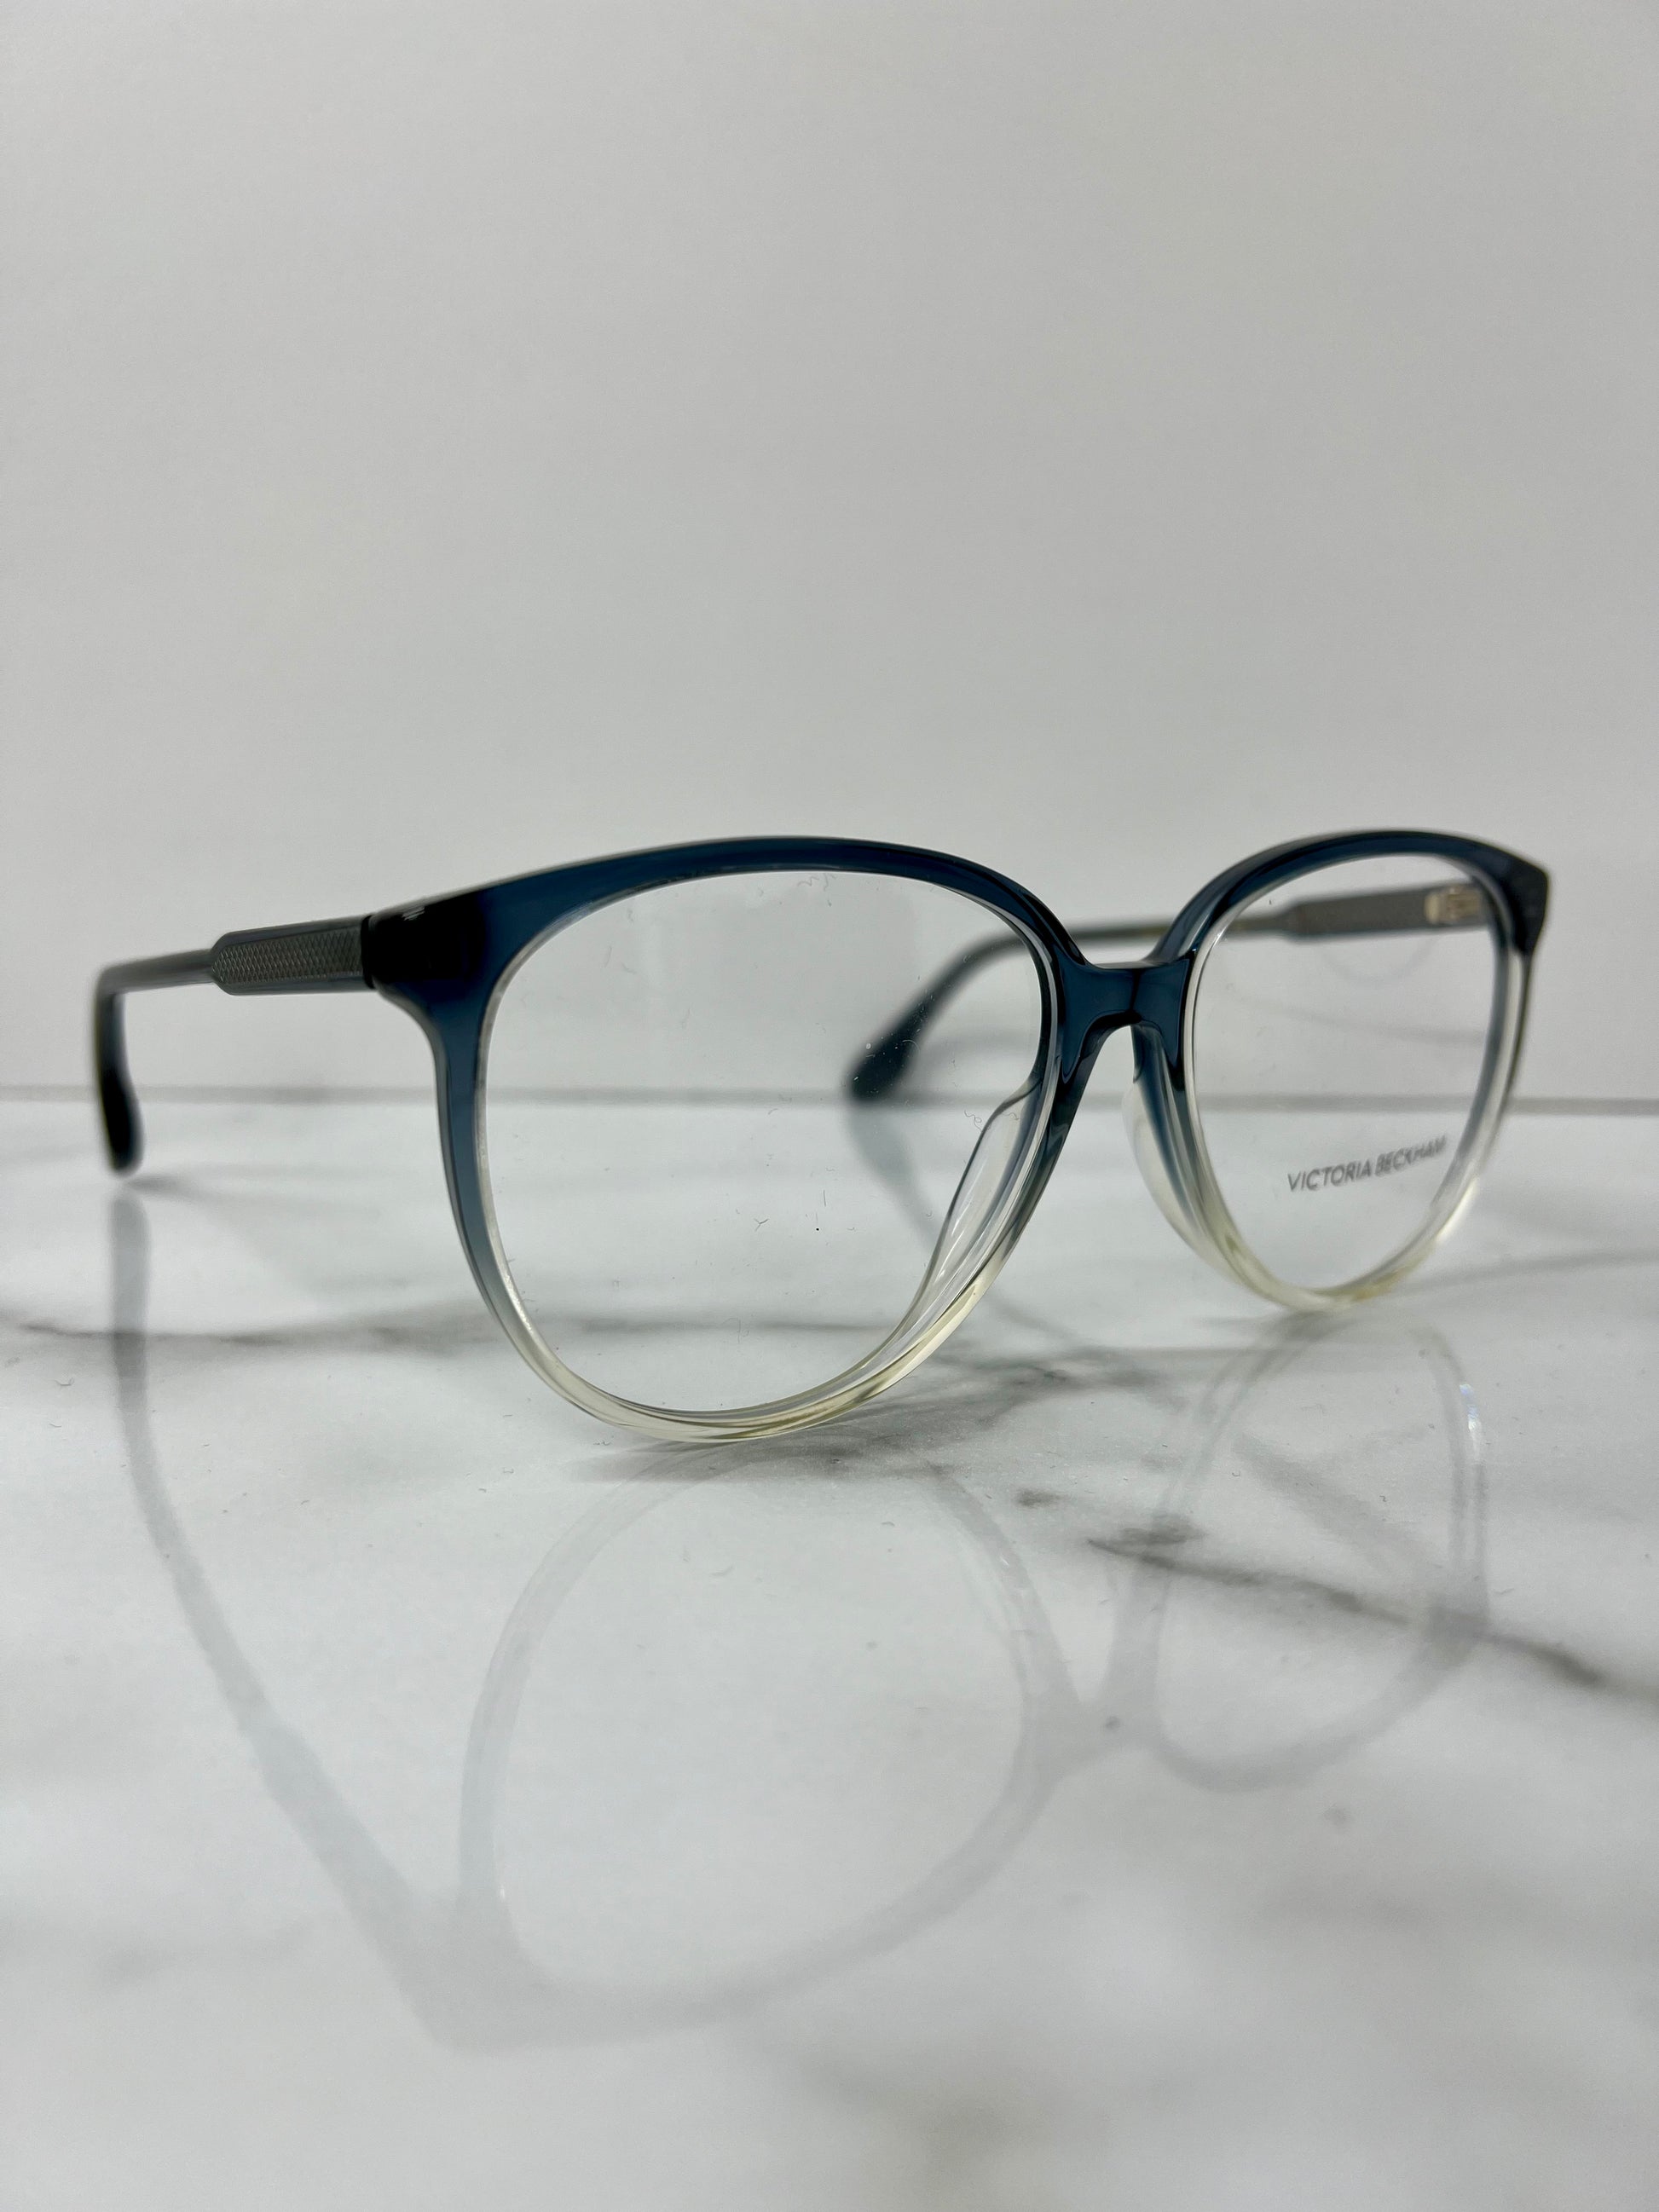 Victoria Beckham Glasses Frames Optical Blue Clear Acetate Eyeglasses VB2619